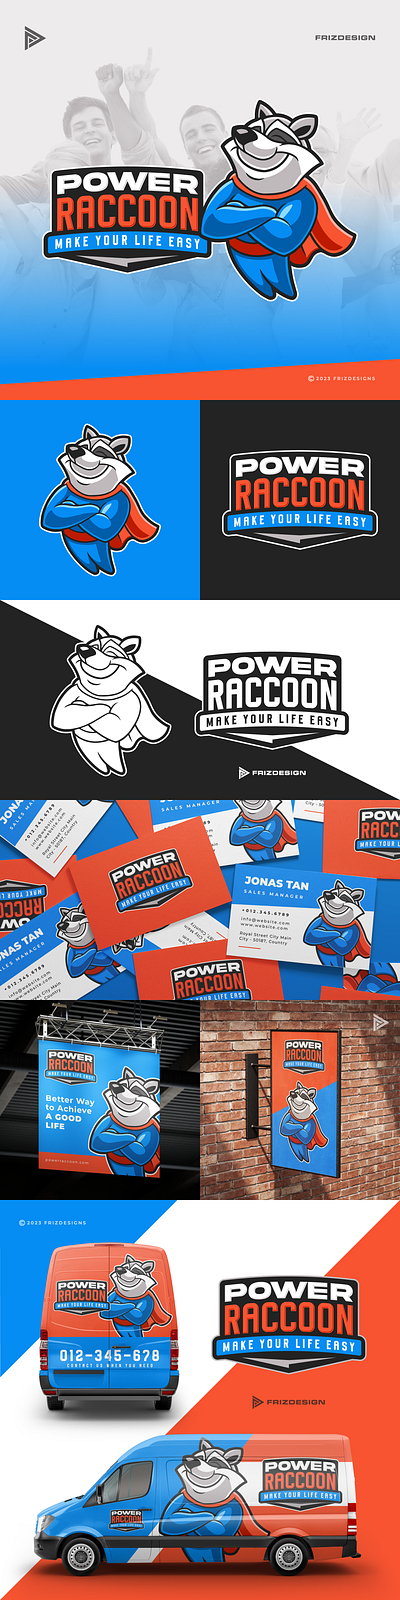 Power Raccoon animal cartoon hero mascot raccoon